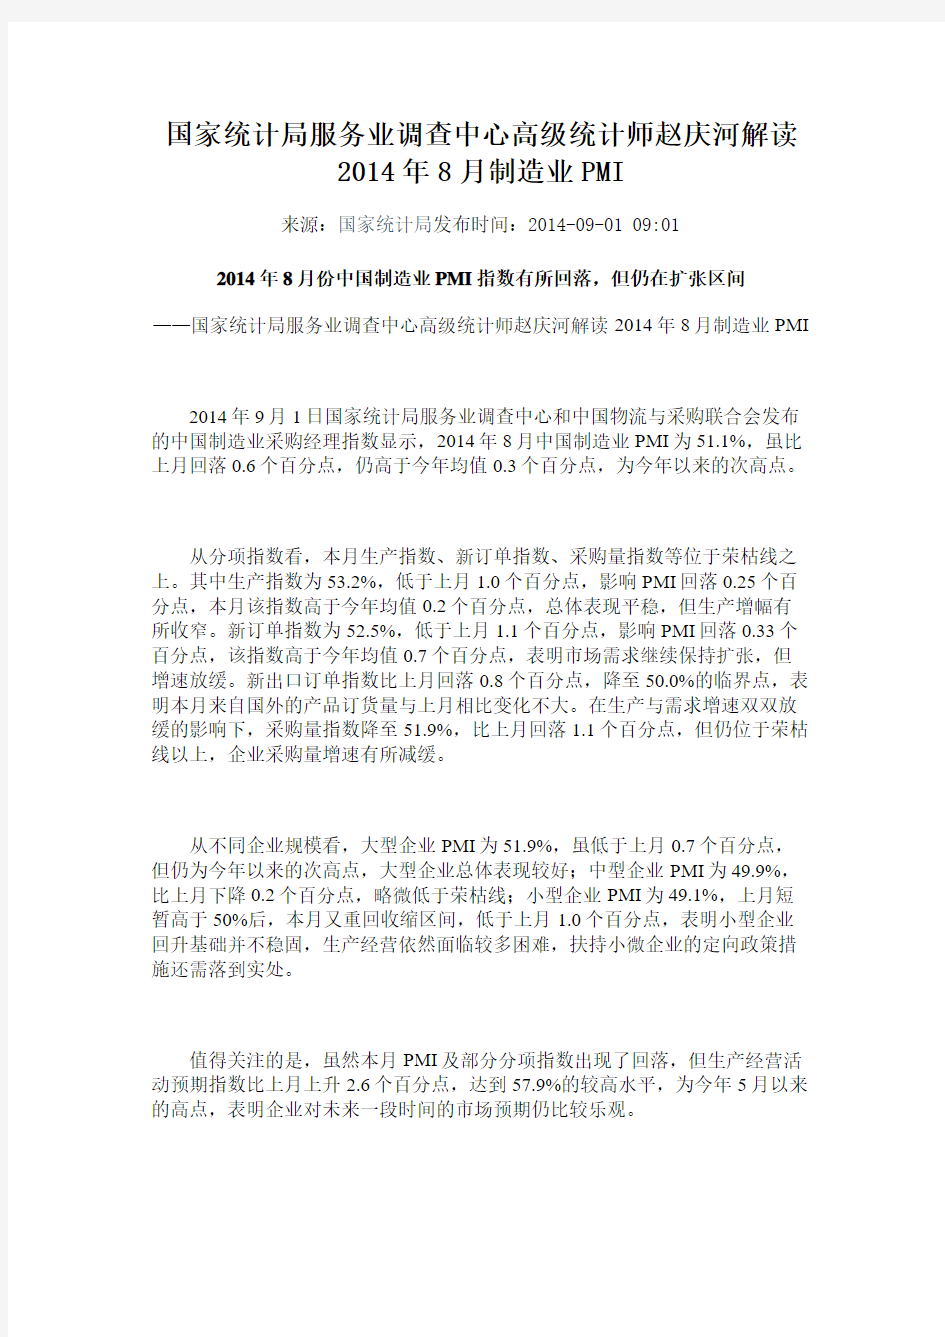 国家统计局服务业调查中心高级统计师赵庆河解读2014年8月制造业PMI